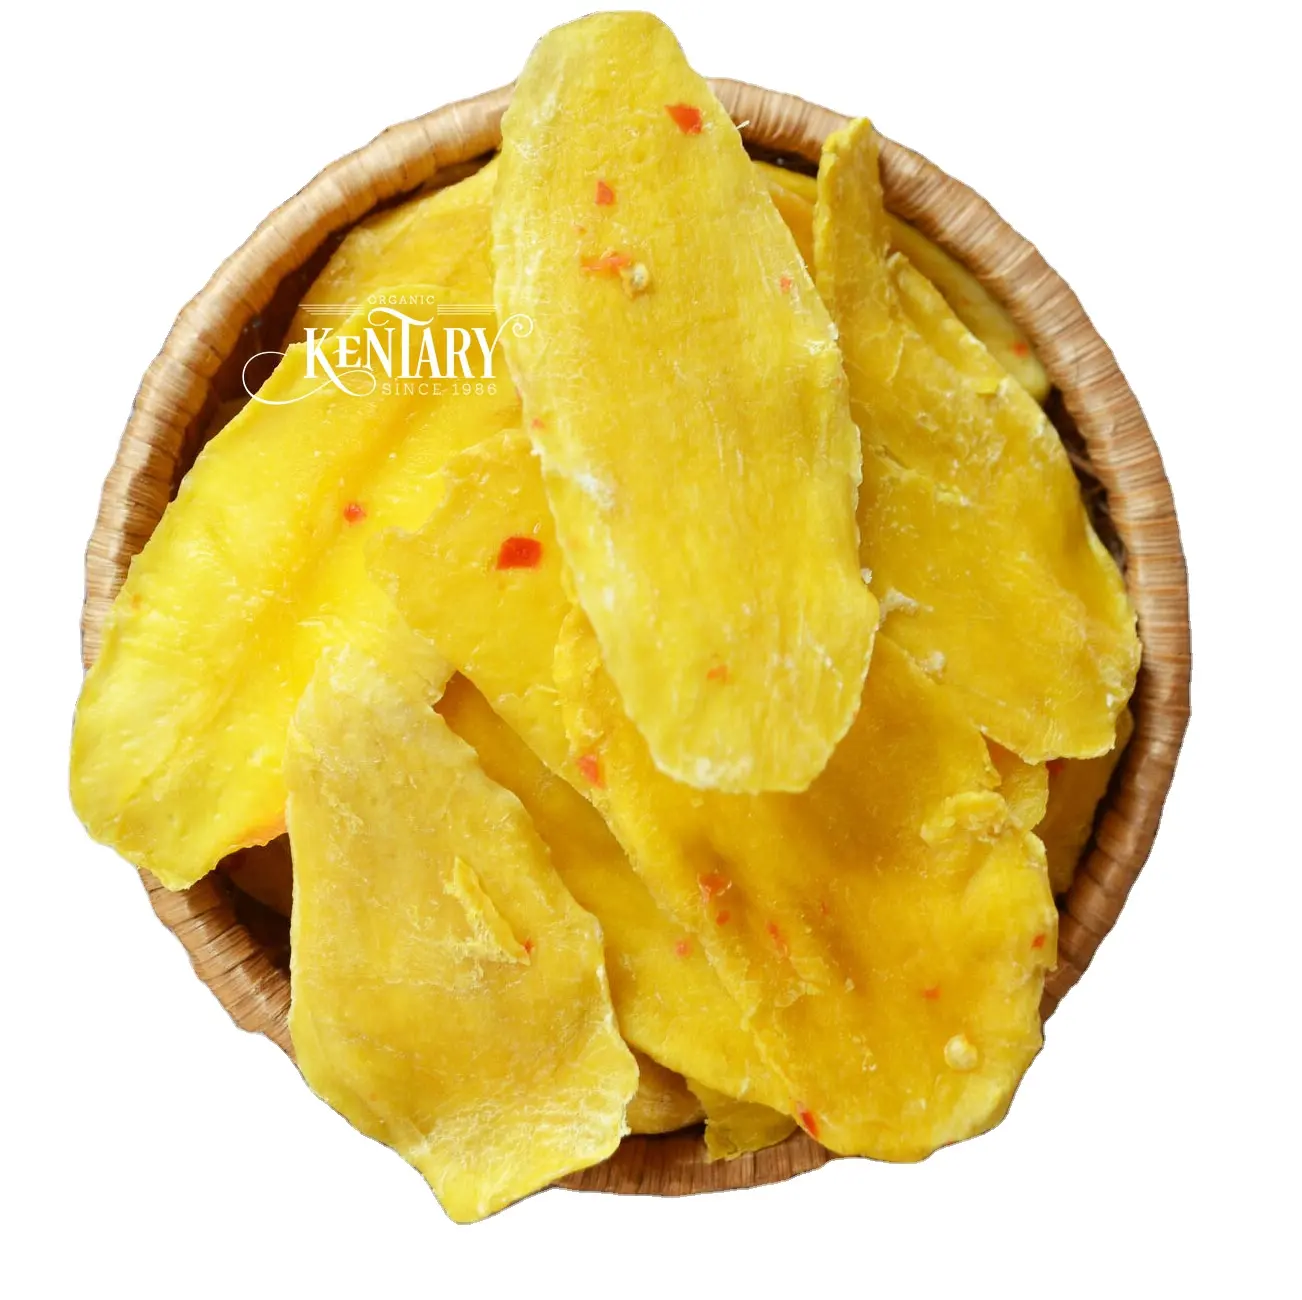 Weich getrocknete Mango Light Spicy Slices natürliche hohe Qualität Made in Vietnam Gesunder Snack Bester Preis für Picknick Ungesüßt